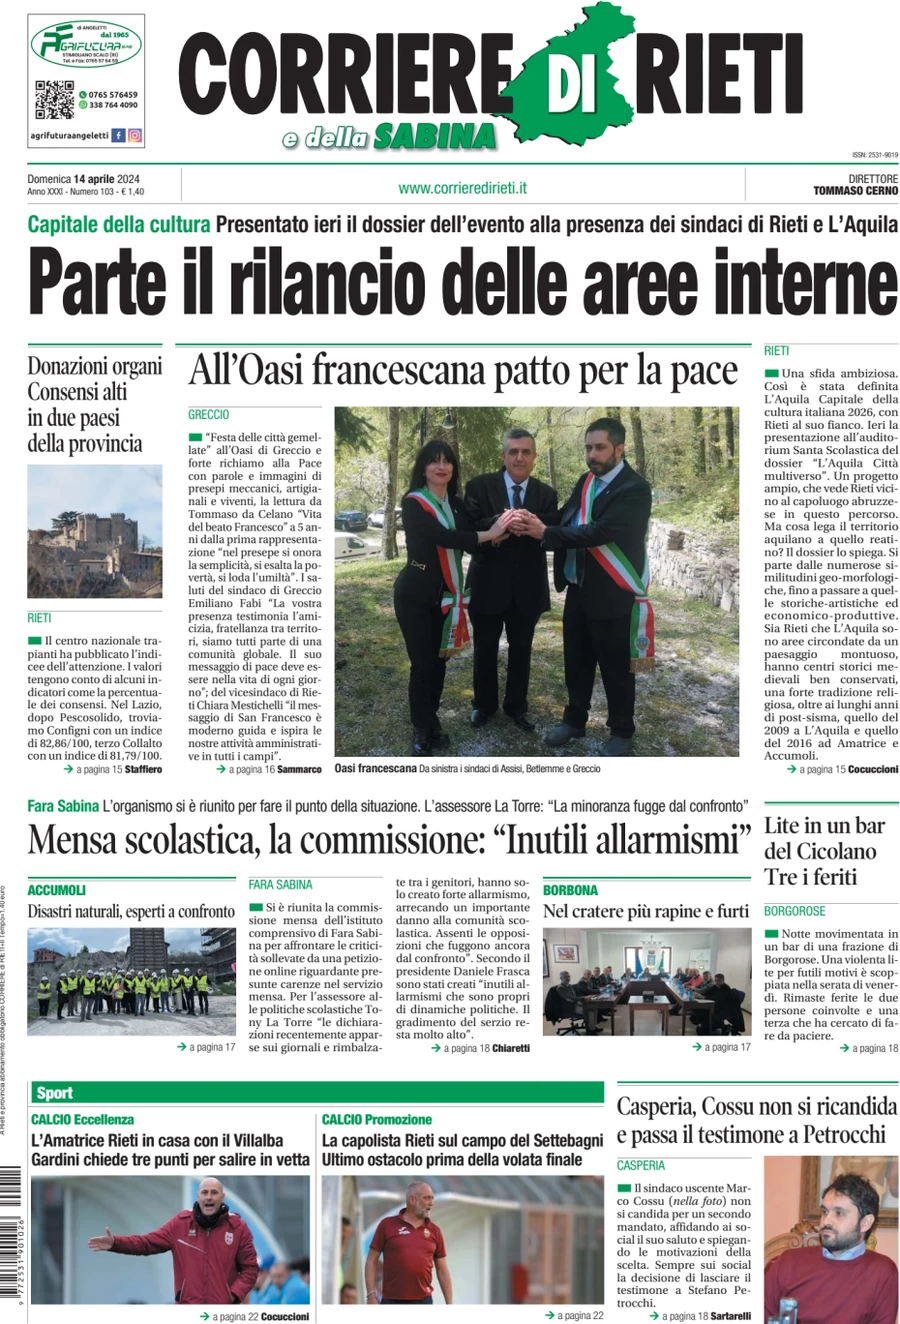 anteprima della prima pagina di corriere-di-rieti-e-della-sabina del 14/04/2024